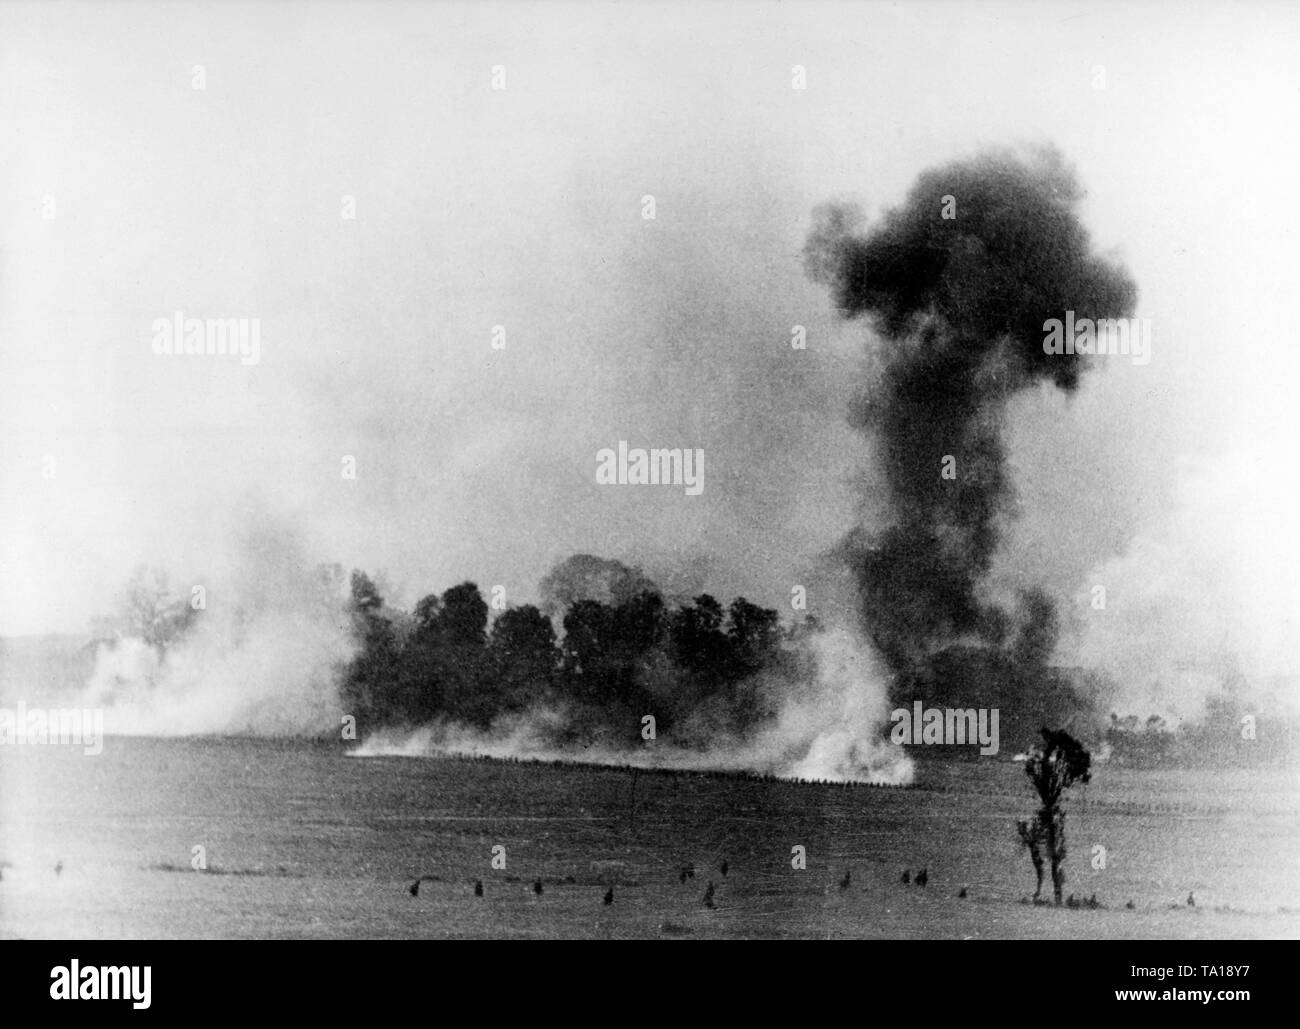 Bombardier en piqué soutenir une attaque de la Wehrmacht sur une position française. Les nuages de fumée témoignent de l'impact de bombes. Photo : correspondant de guerre Voigt. Banque D'Images